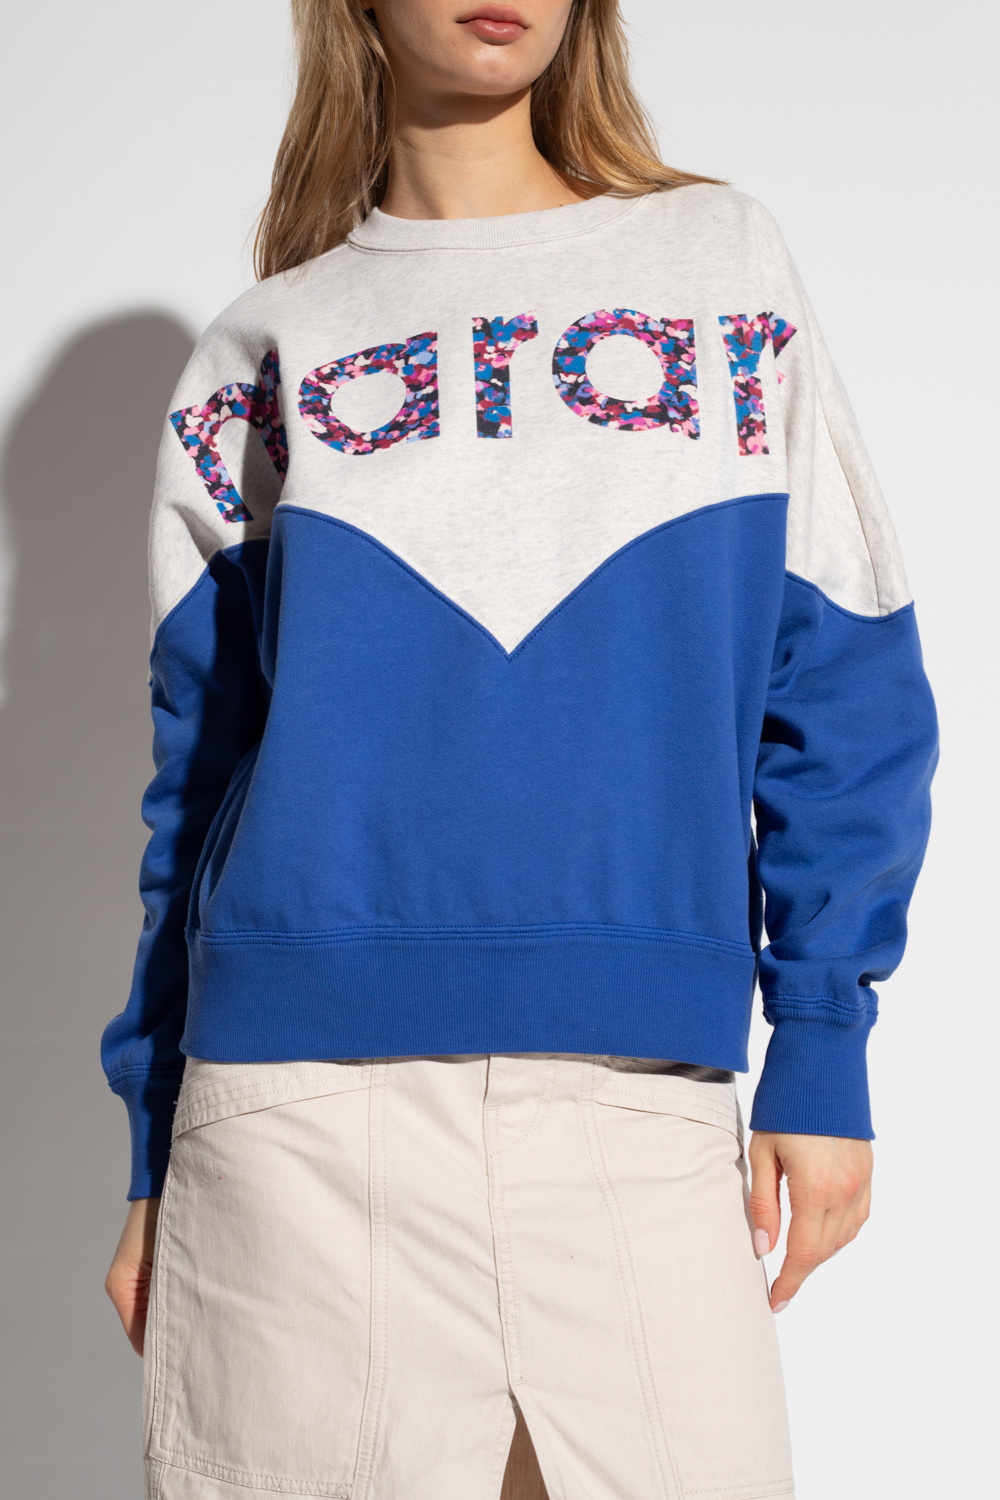 Isabel Marant Étoile ‘Houston’ Jacke sweatshirt with logo